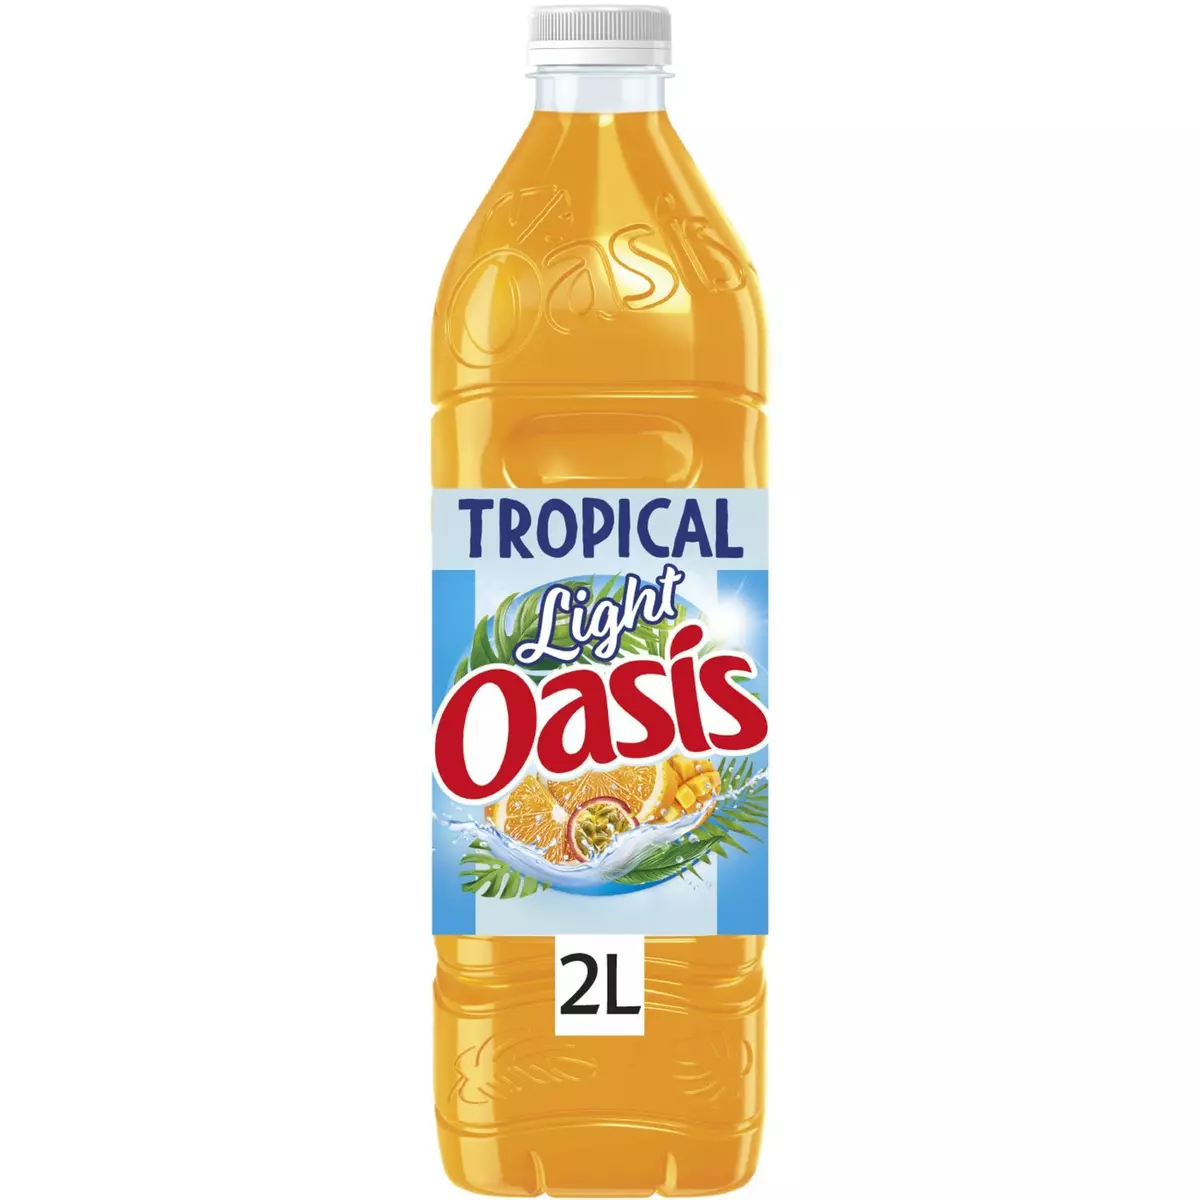 OASIS Boisson aux fruits light goût tropical 2l